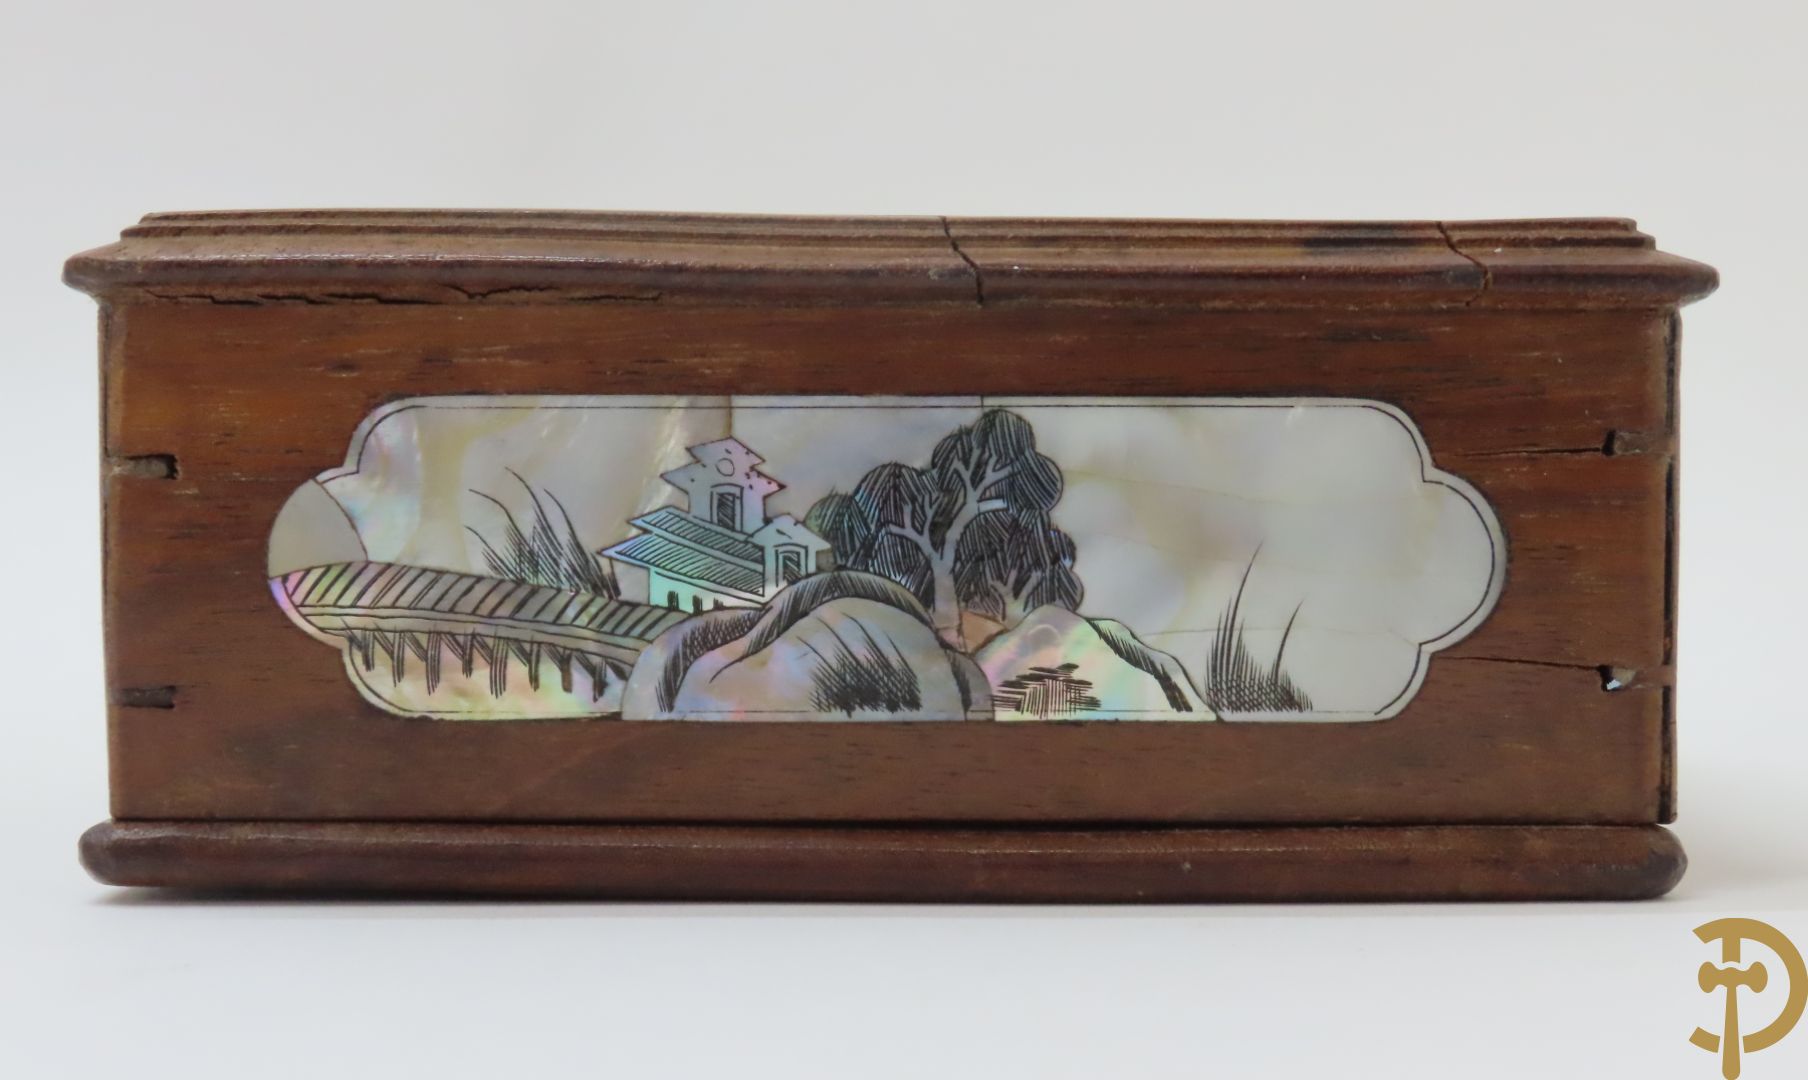 Ovale Chinese porseleinen Kanton schotel met geanimeerd decor en bloementaferelen + hardhouten box met landschap in parelmoer + 3 houtgesculpteerde oosterse figuren